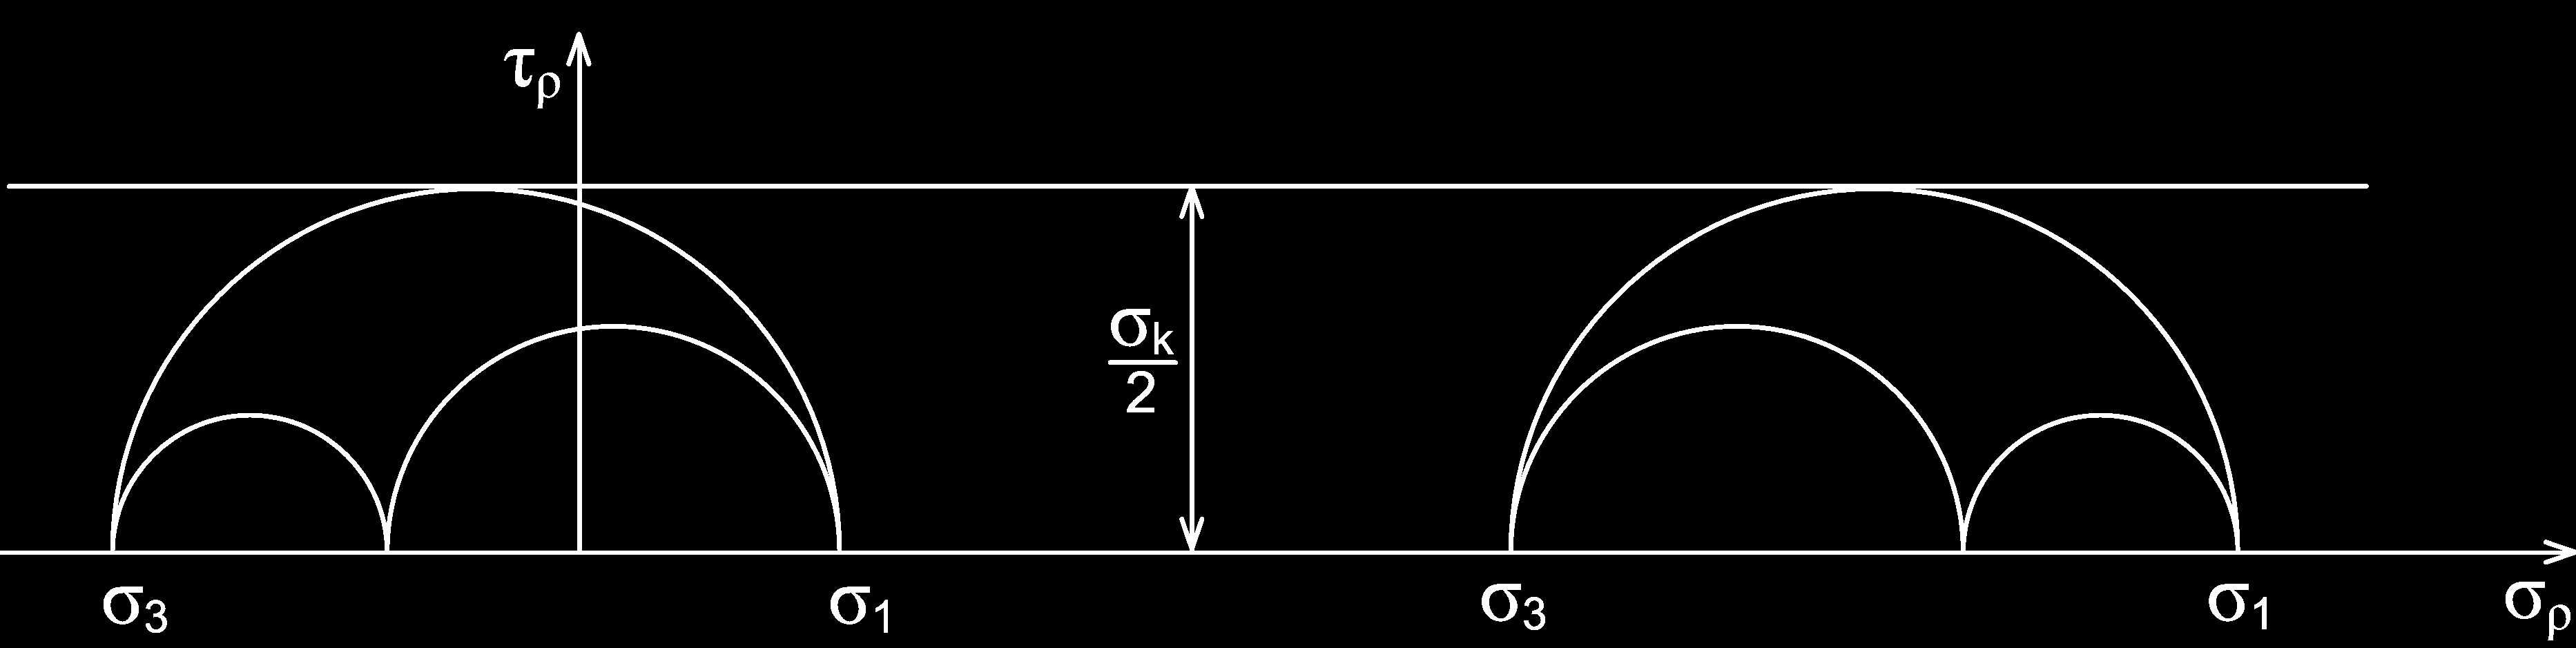 Podmínku plasticity τ max lze rovněž graficky vyjádřit v Mohrově rovině σ ρ, τ ρ formou mezní přímky ve vzdálenosti σ k 2, jak plyne z rovnice (11.4) vydělené dvěma σ 1 σ 3 2 = σ k 2 (11.